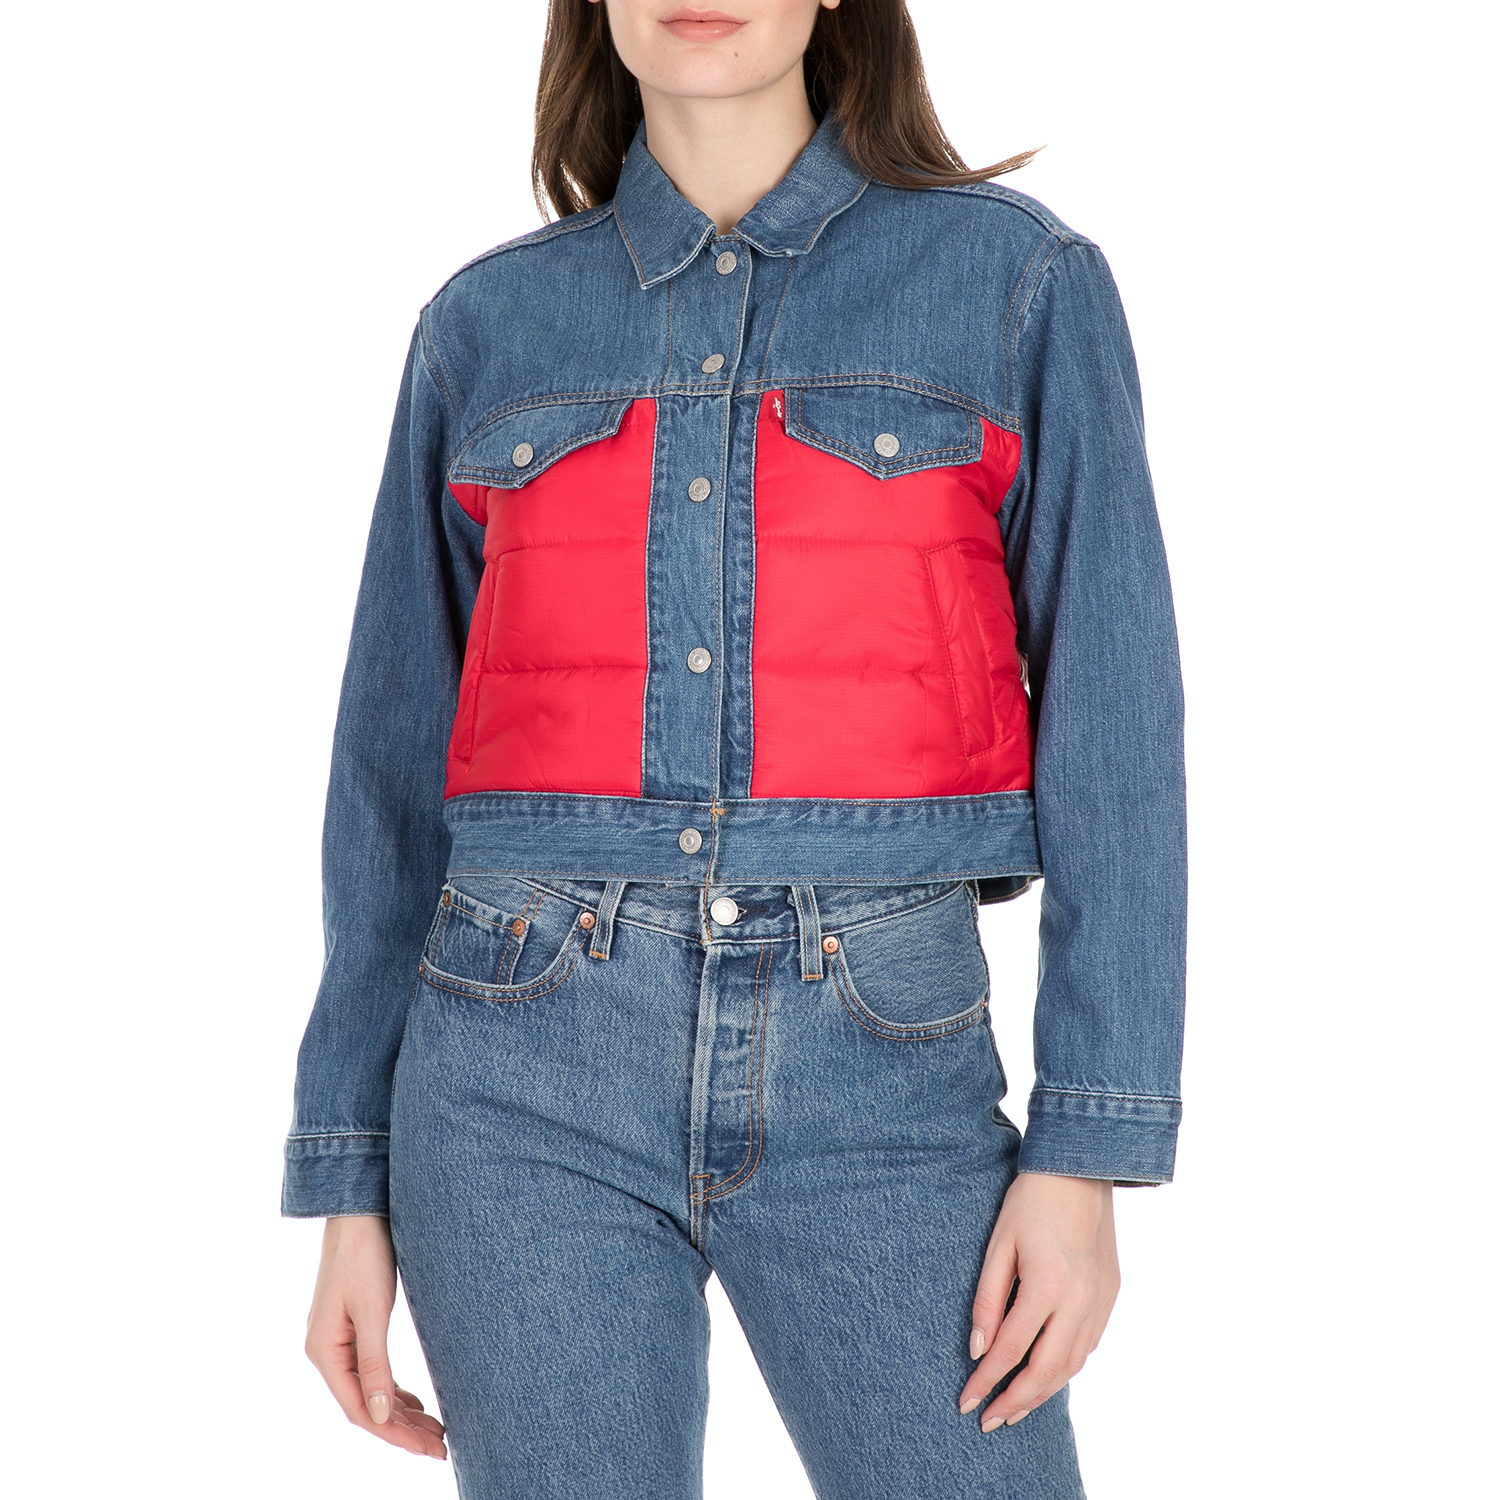 Γυναικεία/Ρούχα/Πανωφόρια/Τζάκετς LEVI'S - Γυναικείο jean jacket LEVI'S μπλε κόκκινο